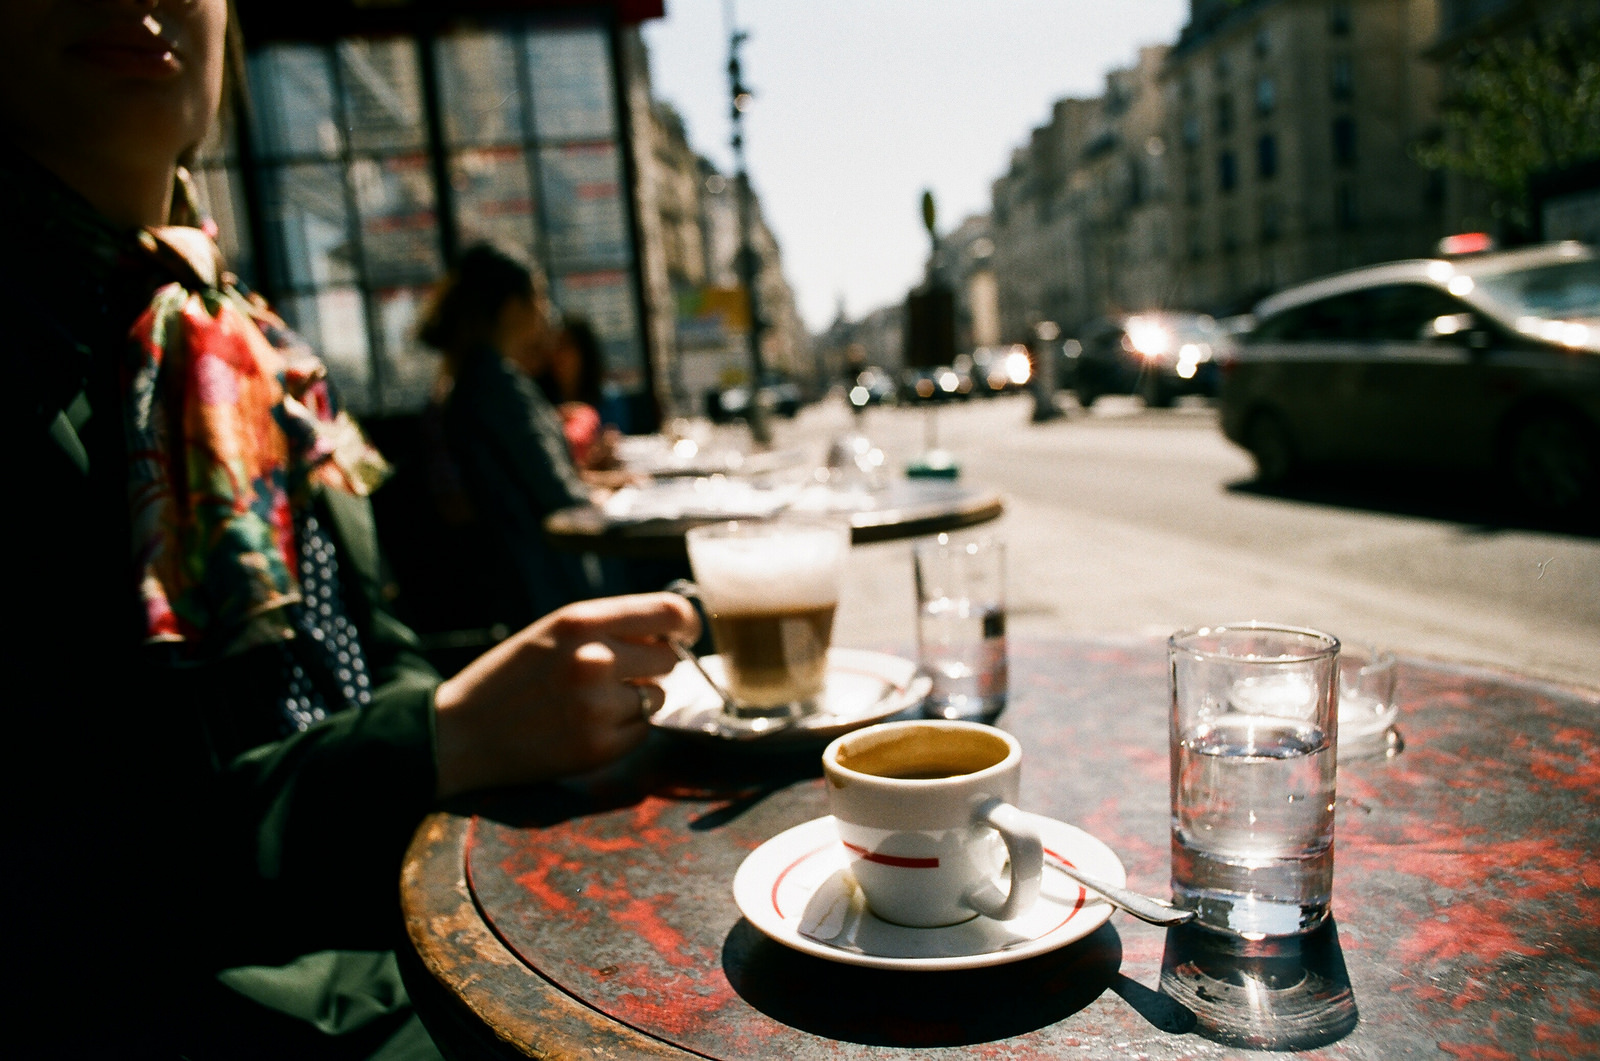 但,一切都在悄然改变着在法国巴黎街头星巴克,一杯意式浓缩咖啡大约是